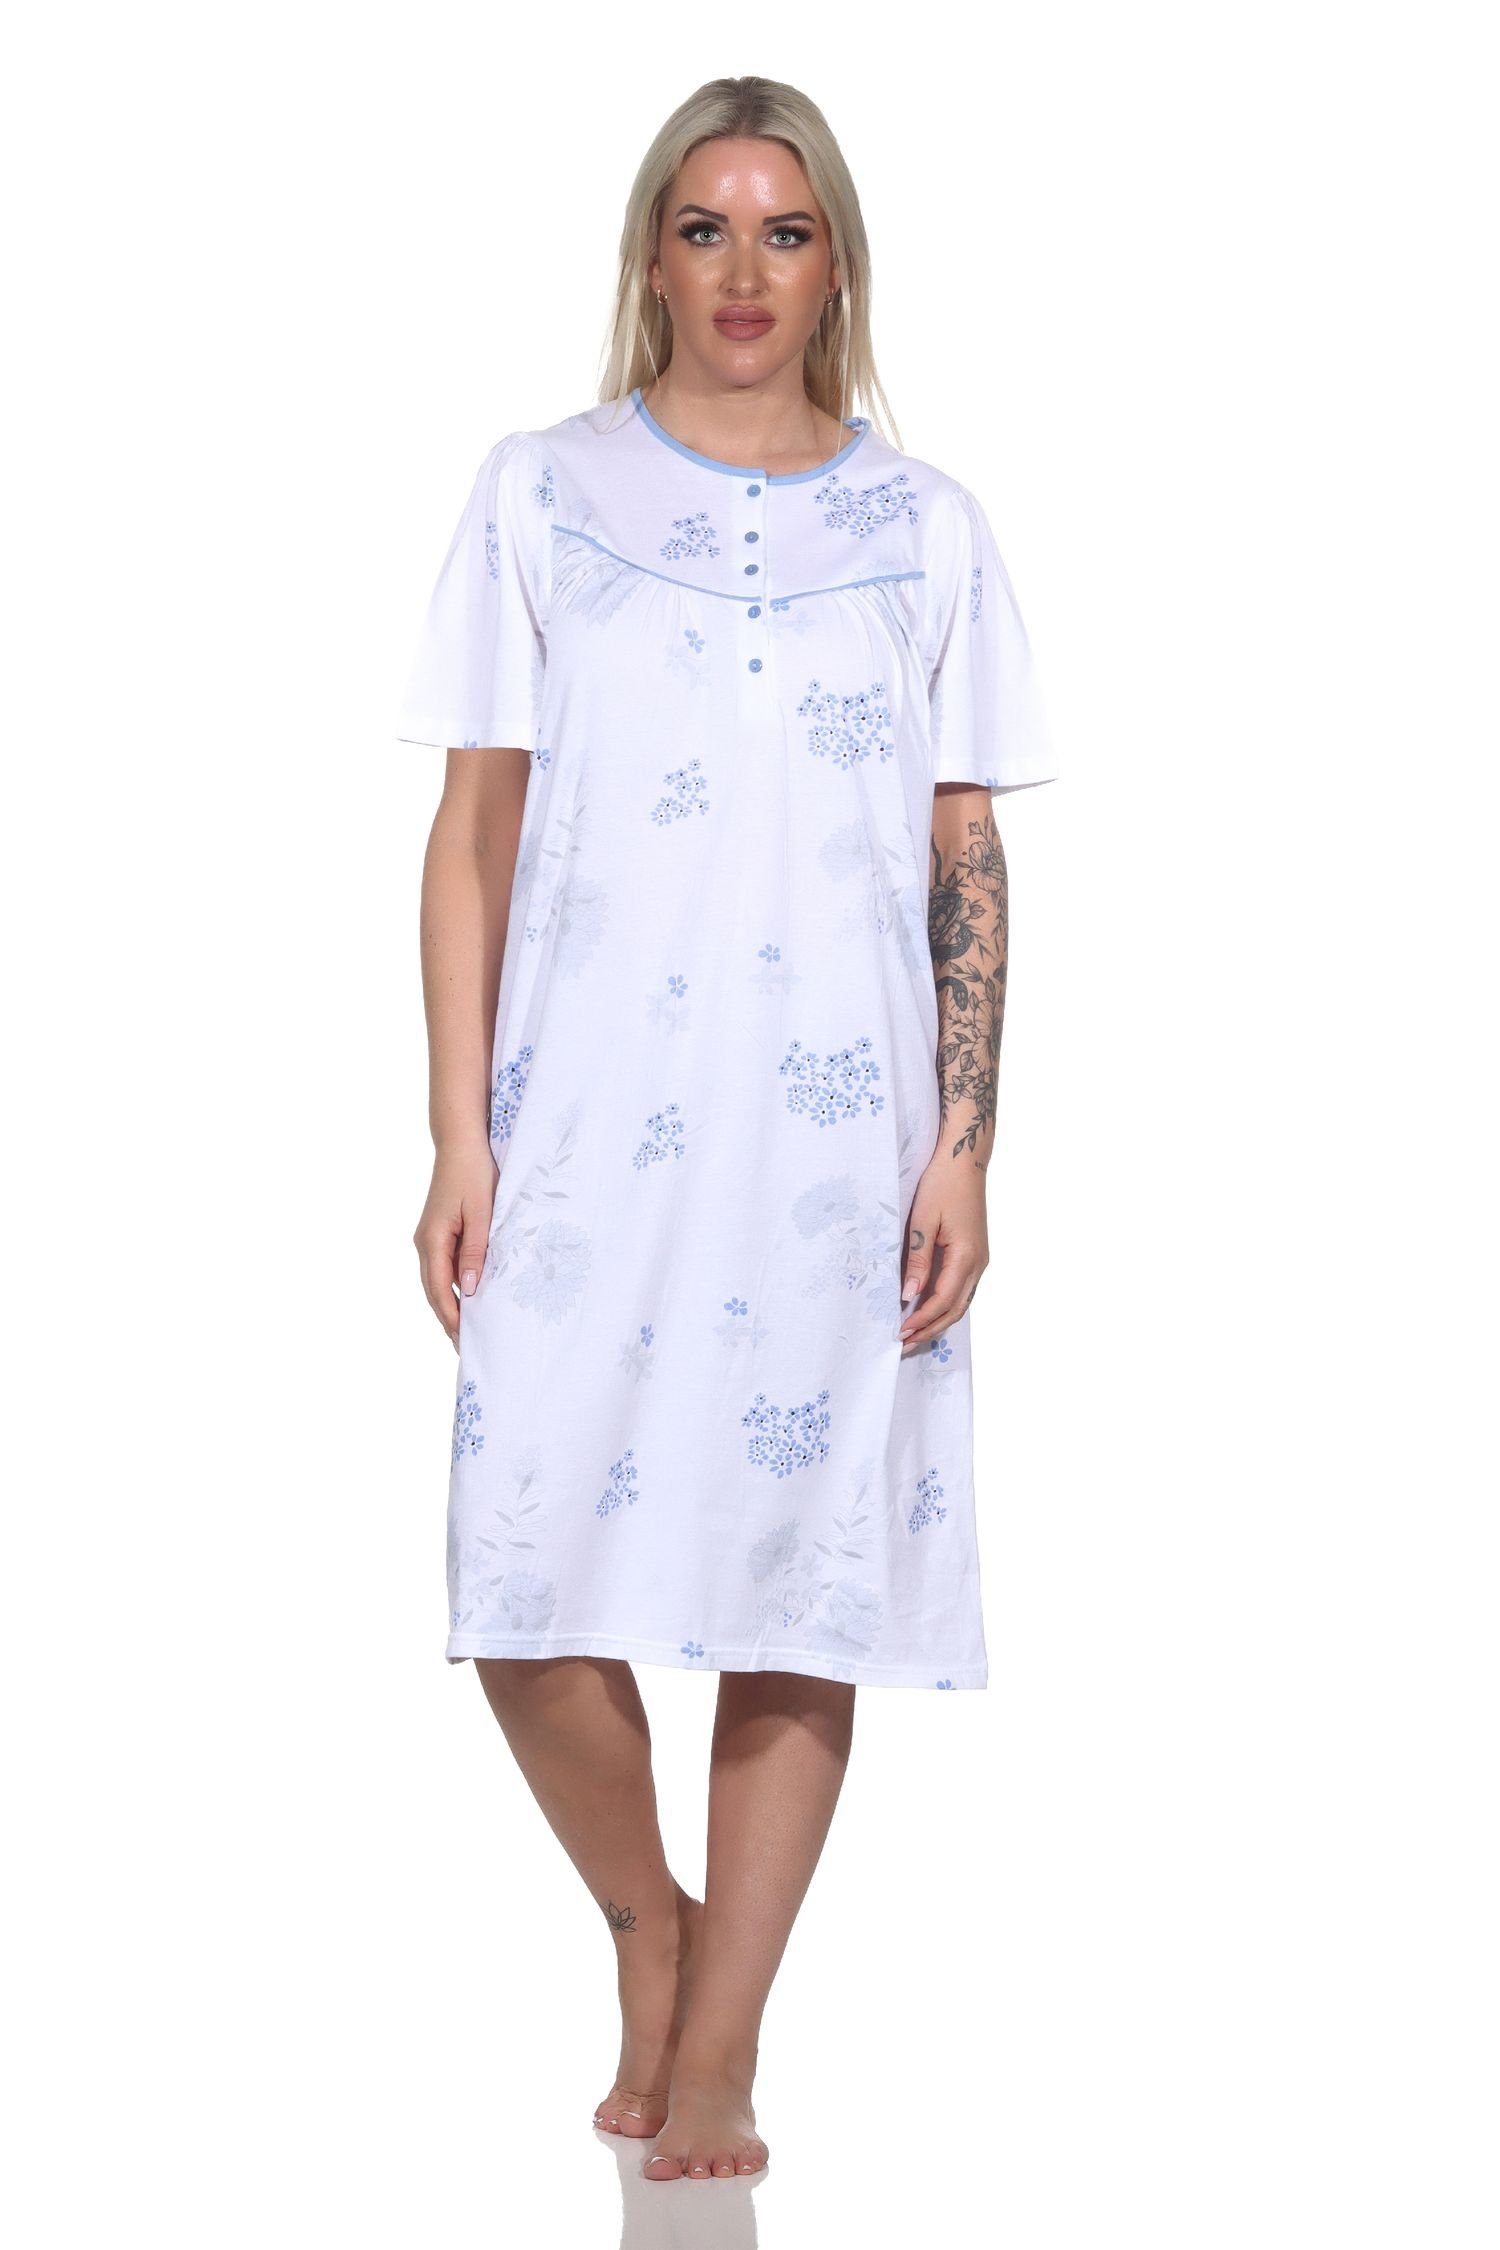 Normann Nachthemd Frauliches kurzarm Damen Nachthemd in klassischer Optik hellblau